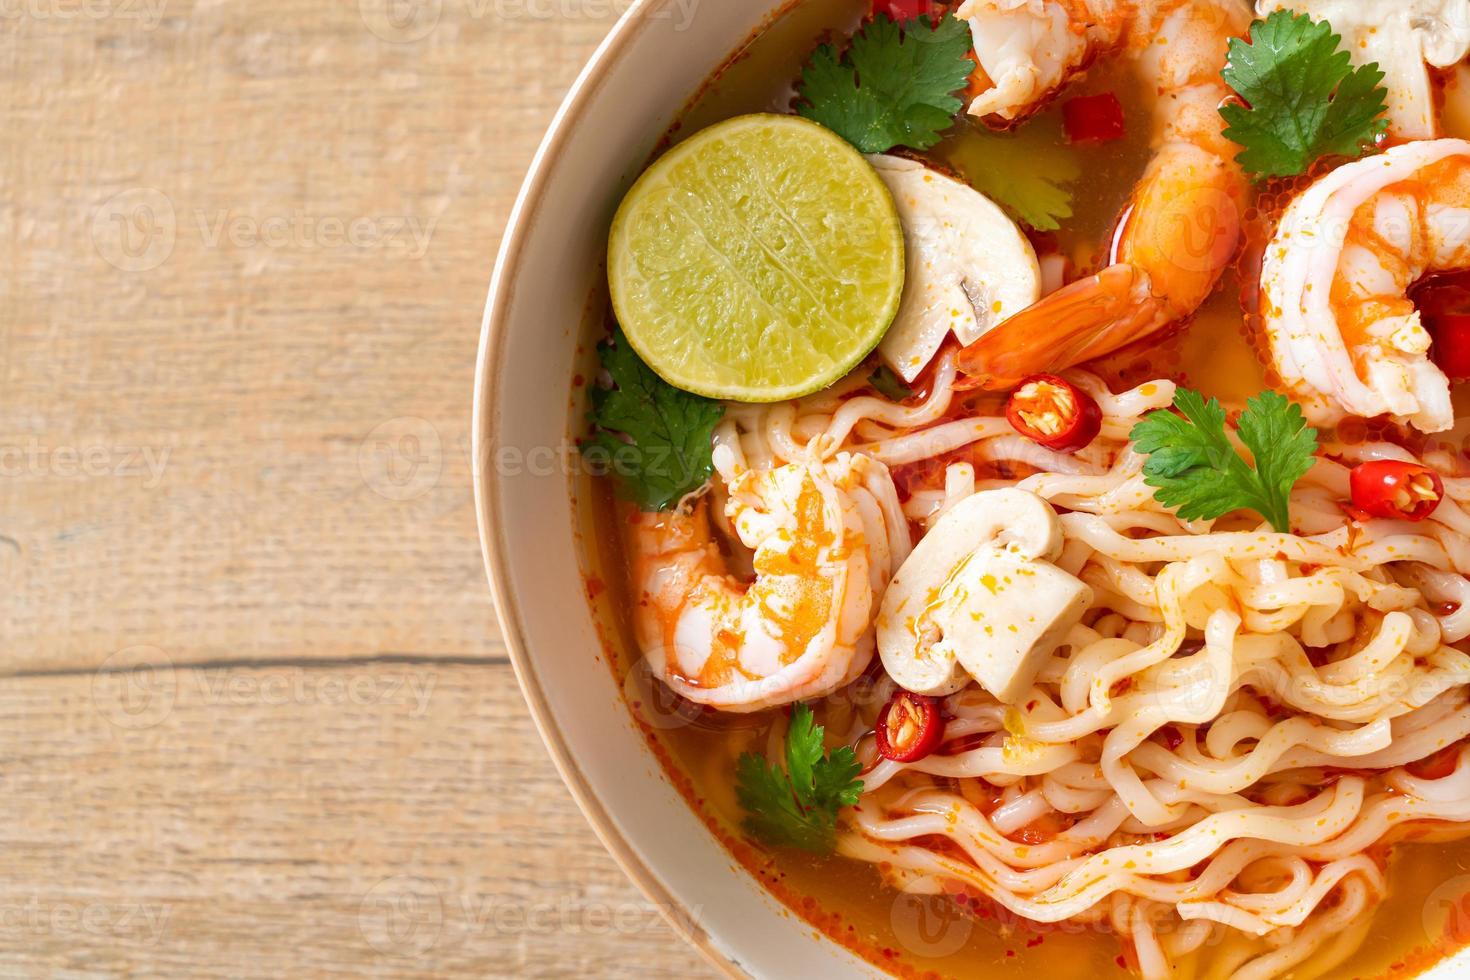 fideos instantáneos ramen en sopa picante con camarones, o tom yum kung - estilo de comida asiática foto